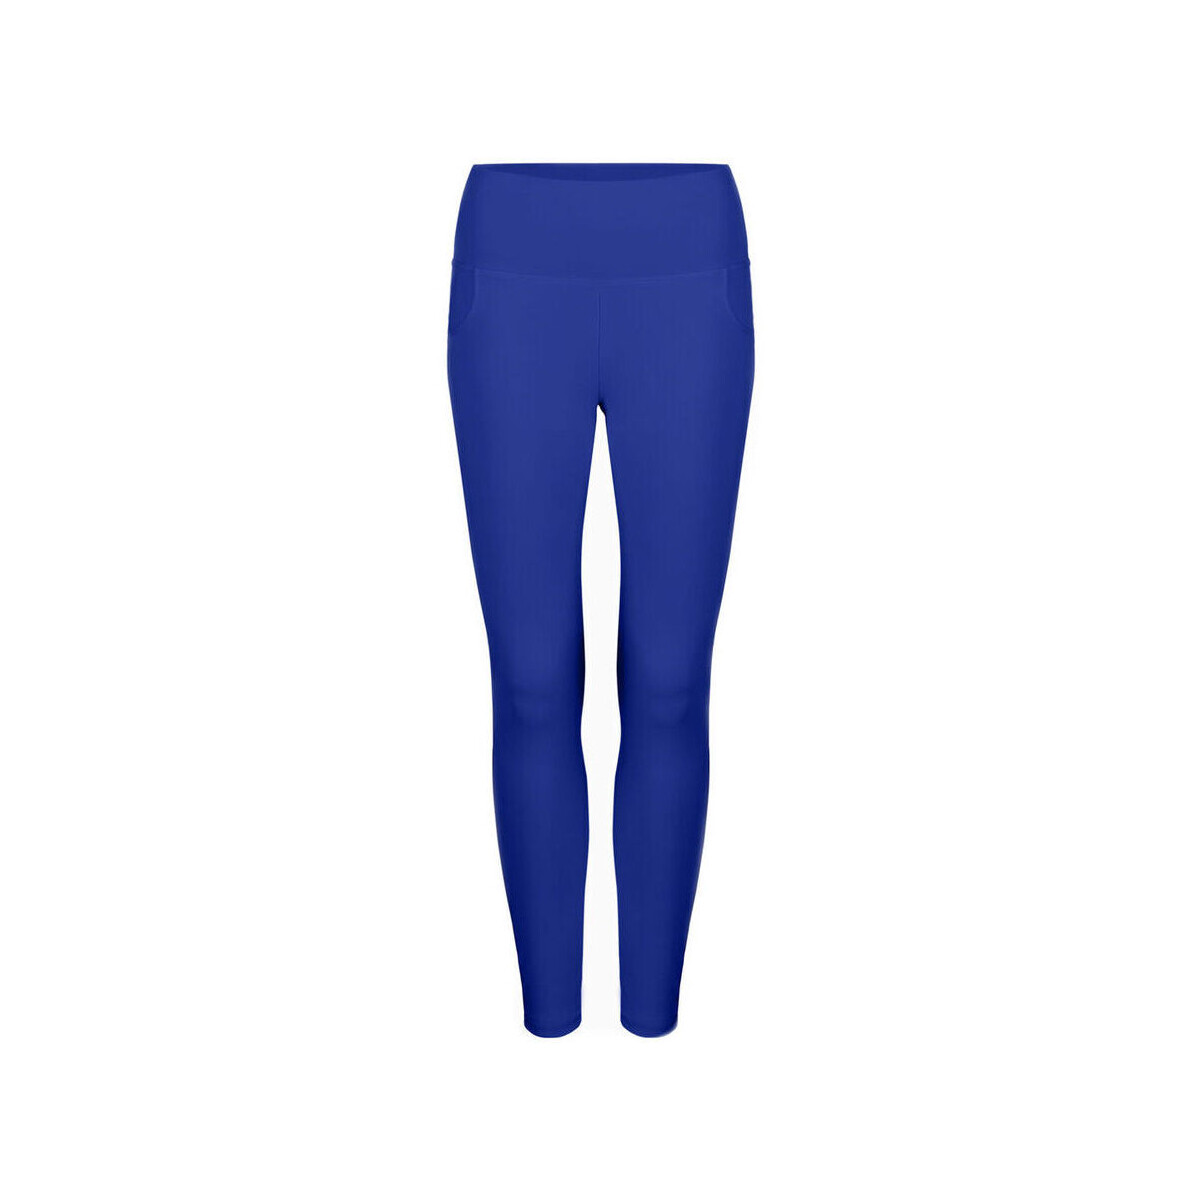 Textiel Dames Broeken / Pantalons Bodyboo - bb24004 Blauw